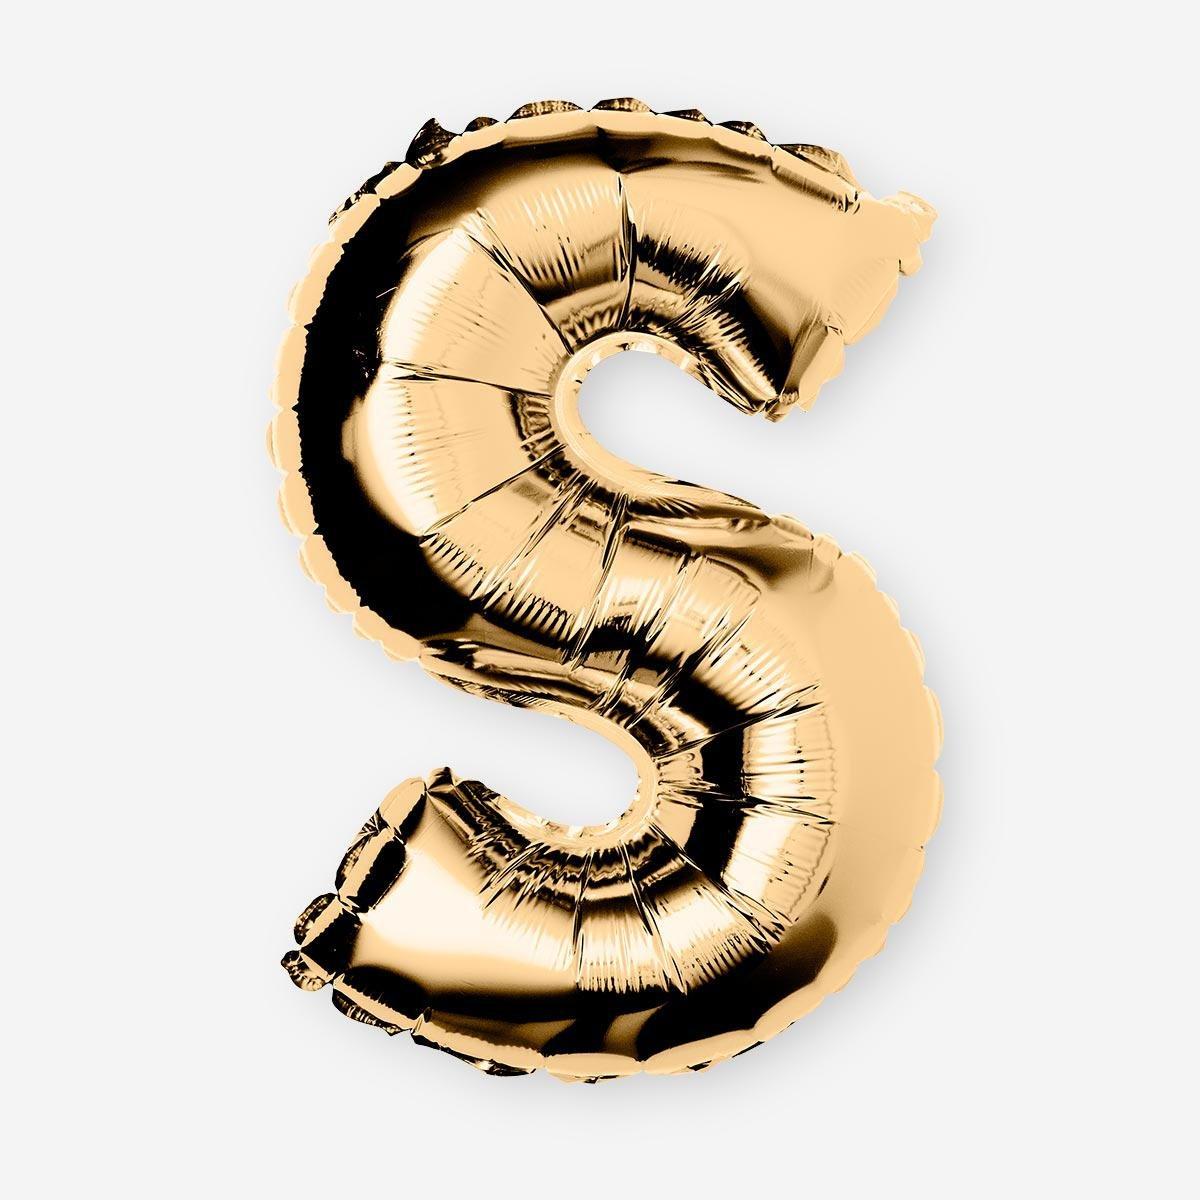 Gold S shaped aluminium balloon